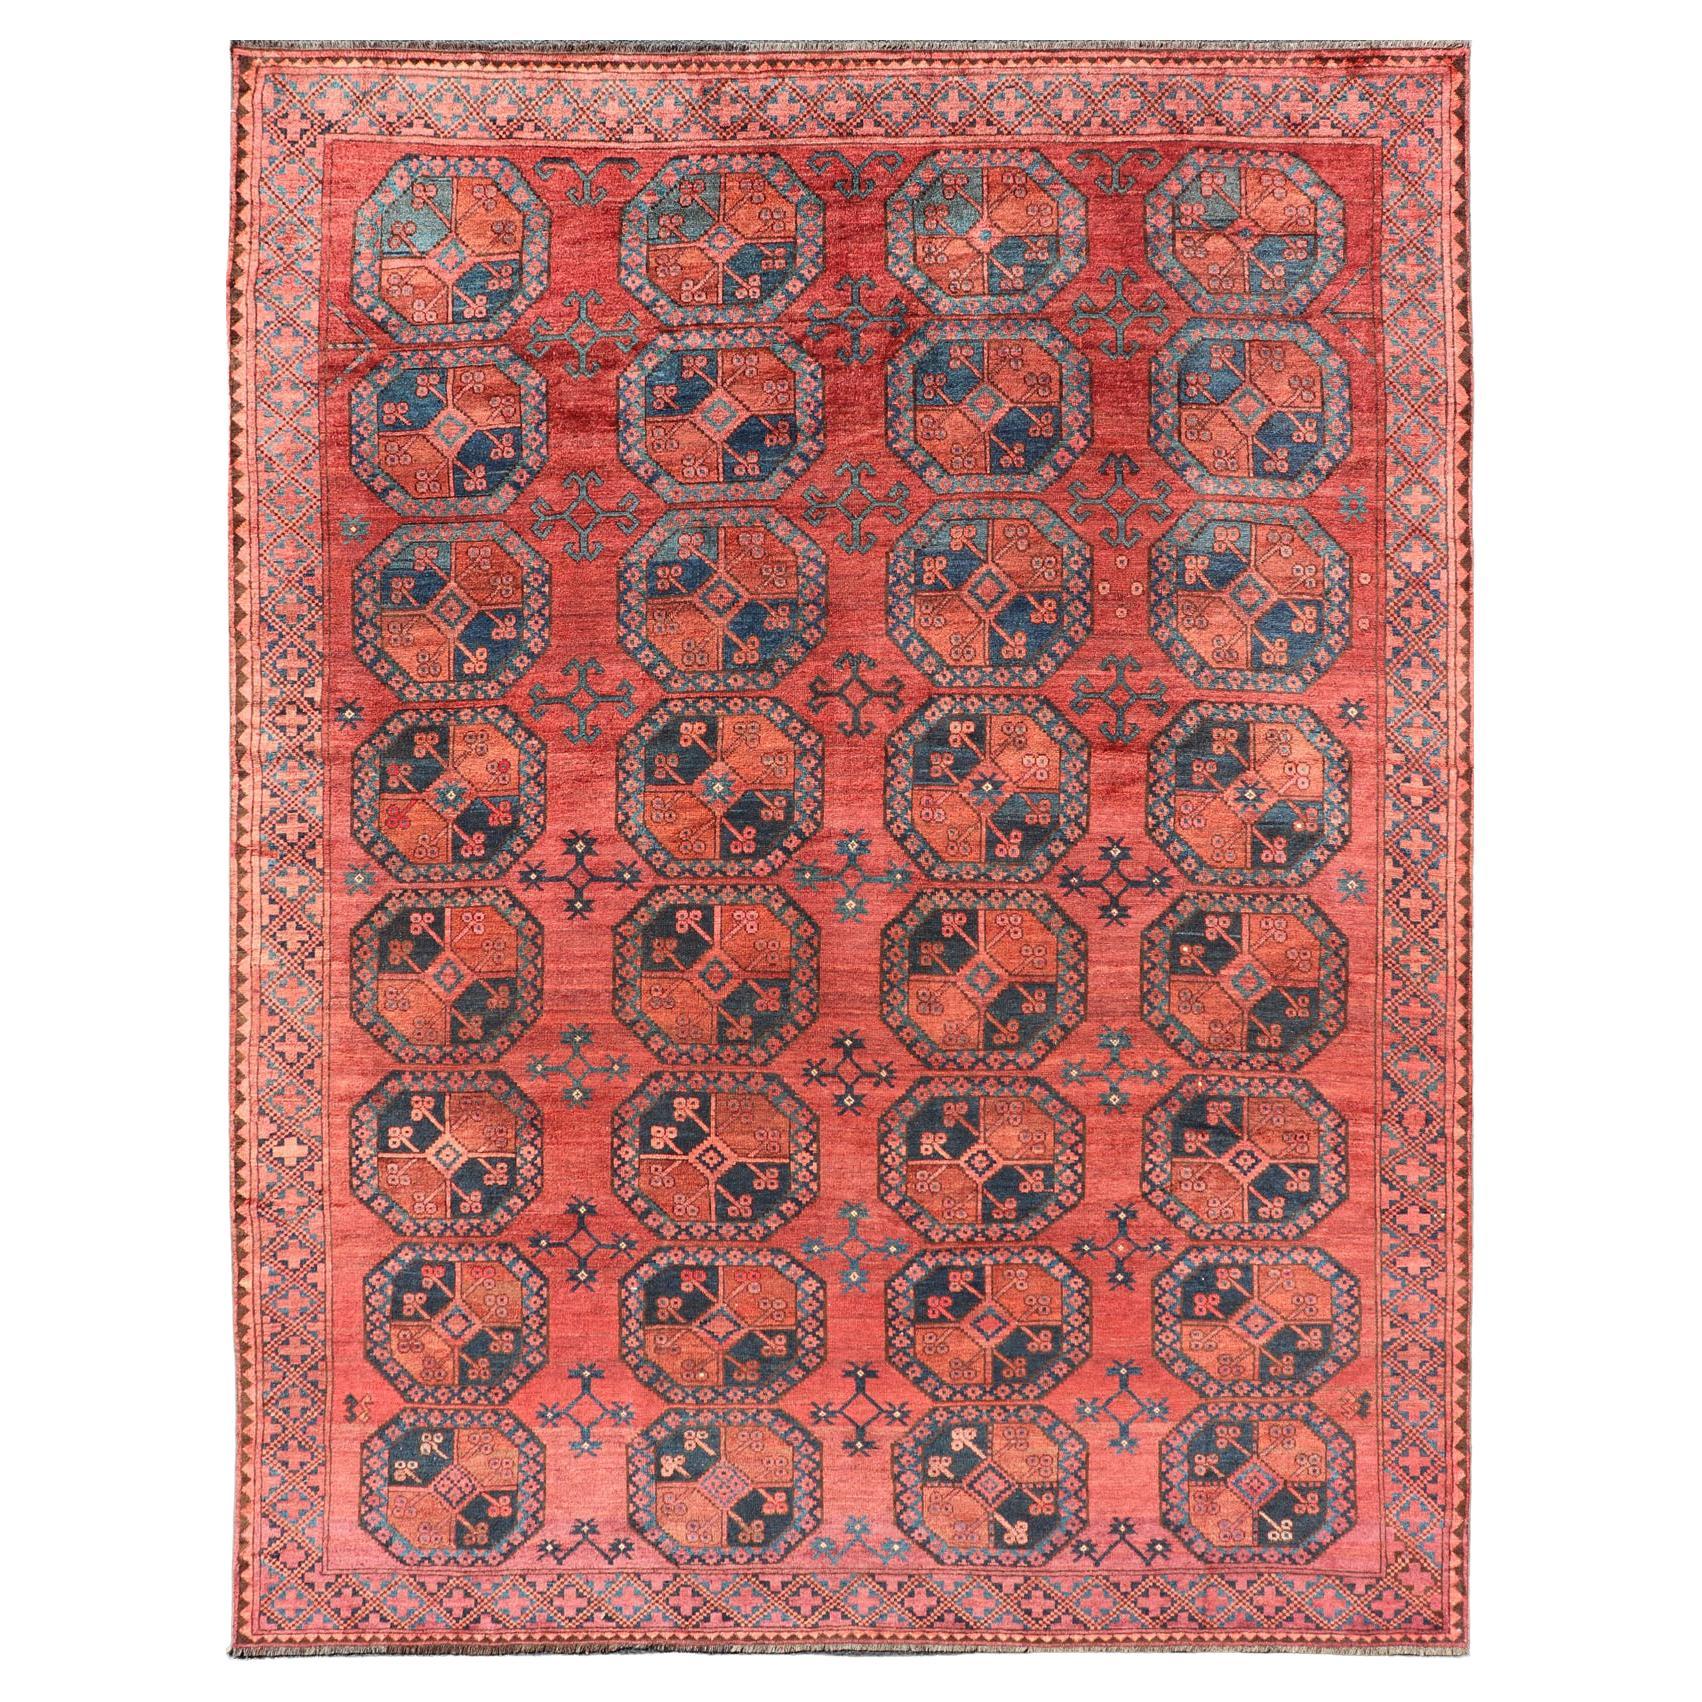 Handgeknüpfter Turkomen Ersari-Teppich aus Wolle mit Gul-Design in Rot, Orange und Blau